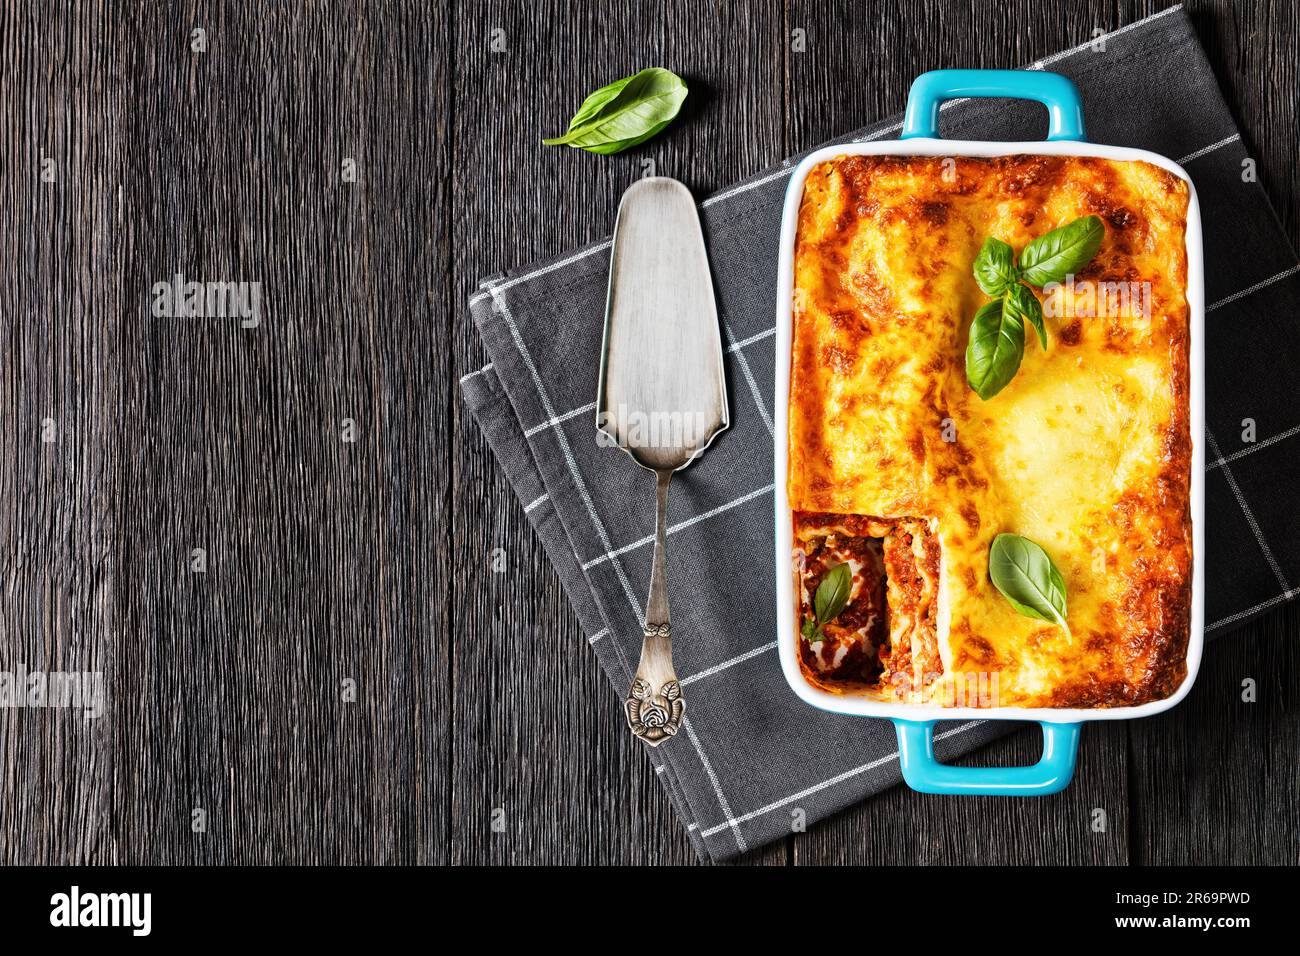 lasagnes al forno, lasagnes de bœuf italien avec sauce ragu classique, nouilles de pâtes et ricotta dans un plat de cuisson sur table en bois sombre, horizontal Banque D'Images